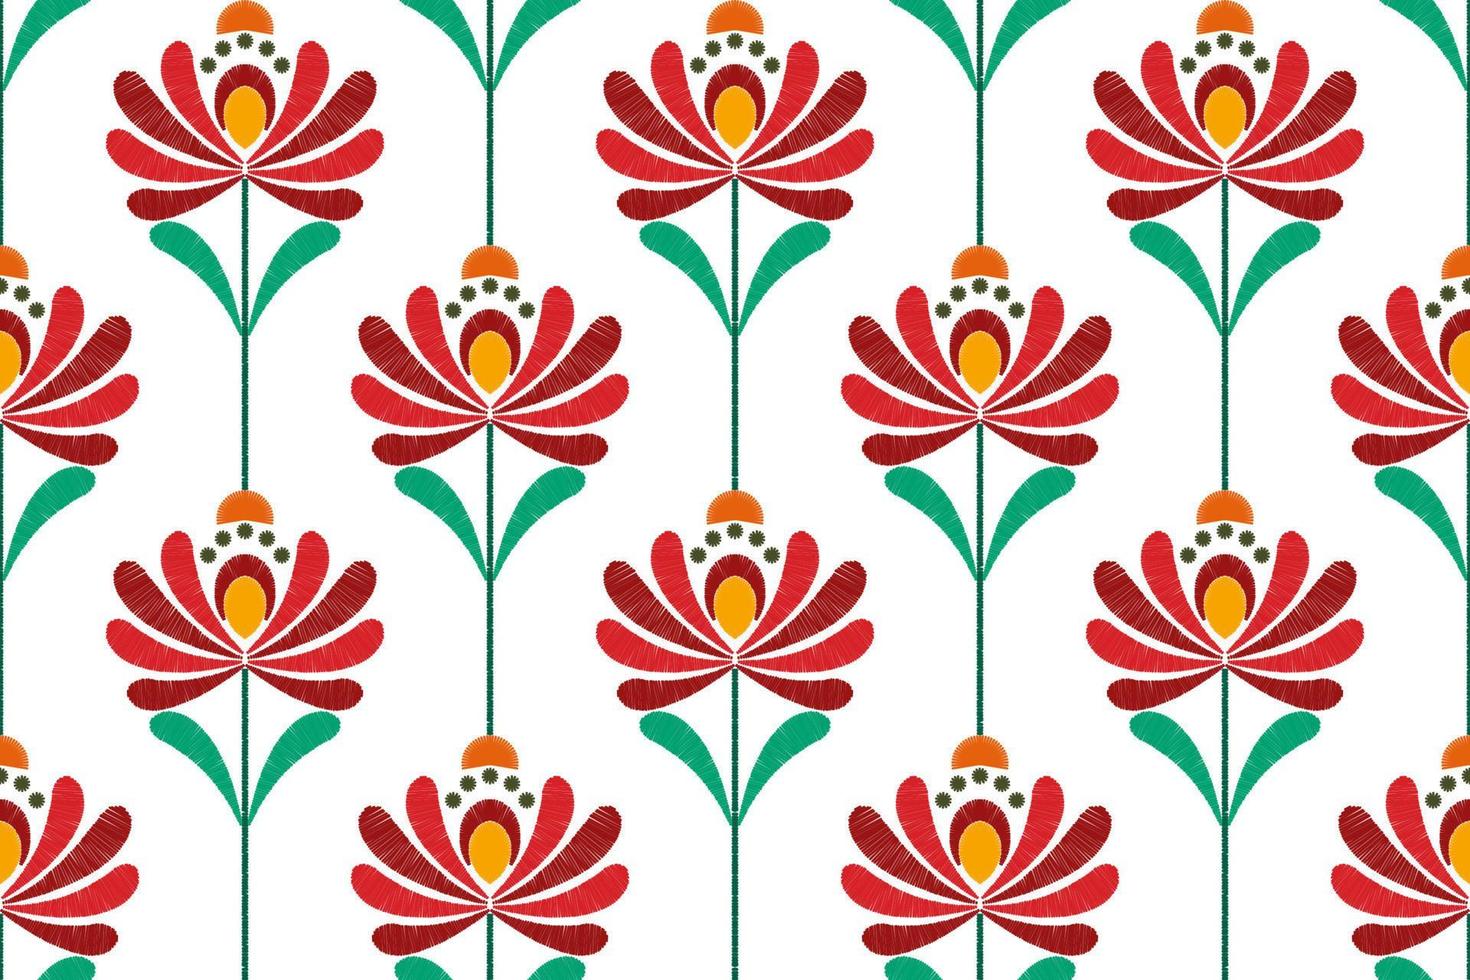 ikat motivo floreale etnico senza cuciture in tessuto. tappeto in tessuto azteco ornamenti mandala decorazioni tessili carta da parati. tribale boho motivo floreale nativo ricamo tradizionale sfondo vettoriale